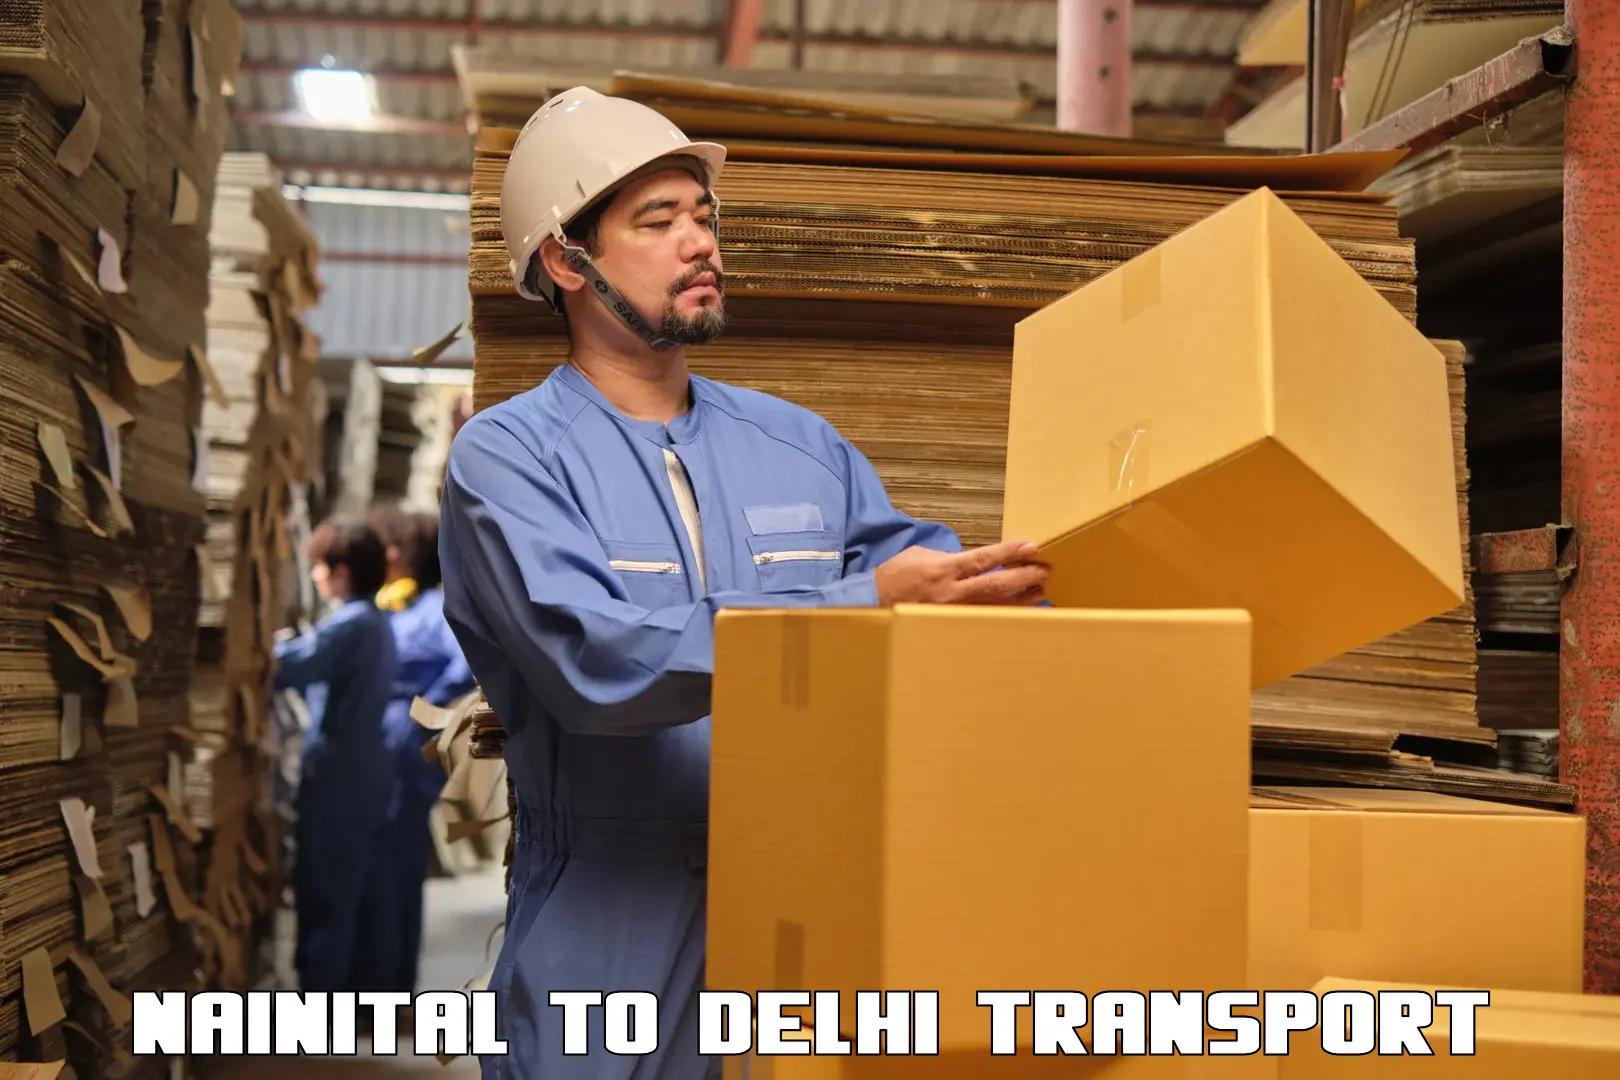 Delivery service Nainital to Delhi